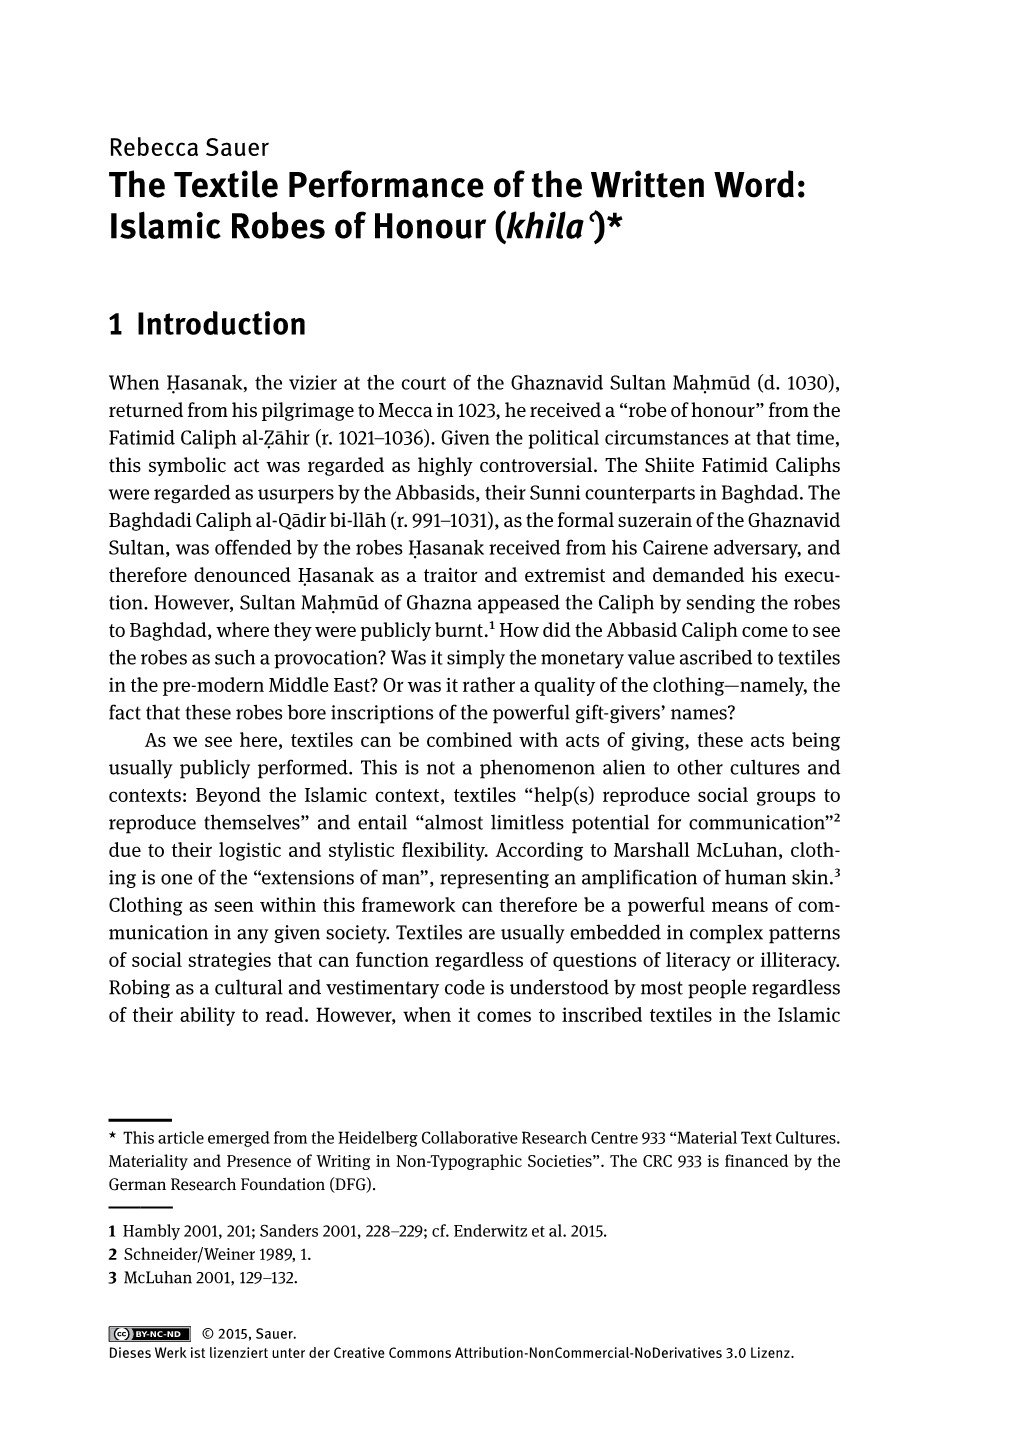 Islamic Robes of Honour (Khilaʿ)*